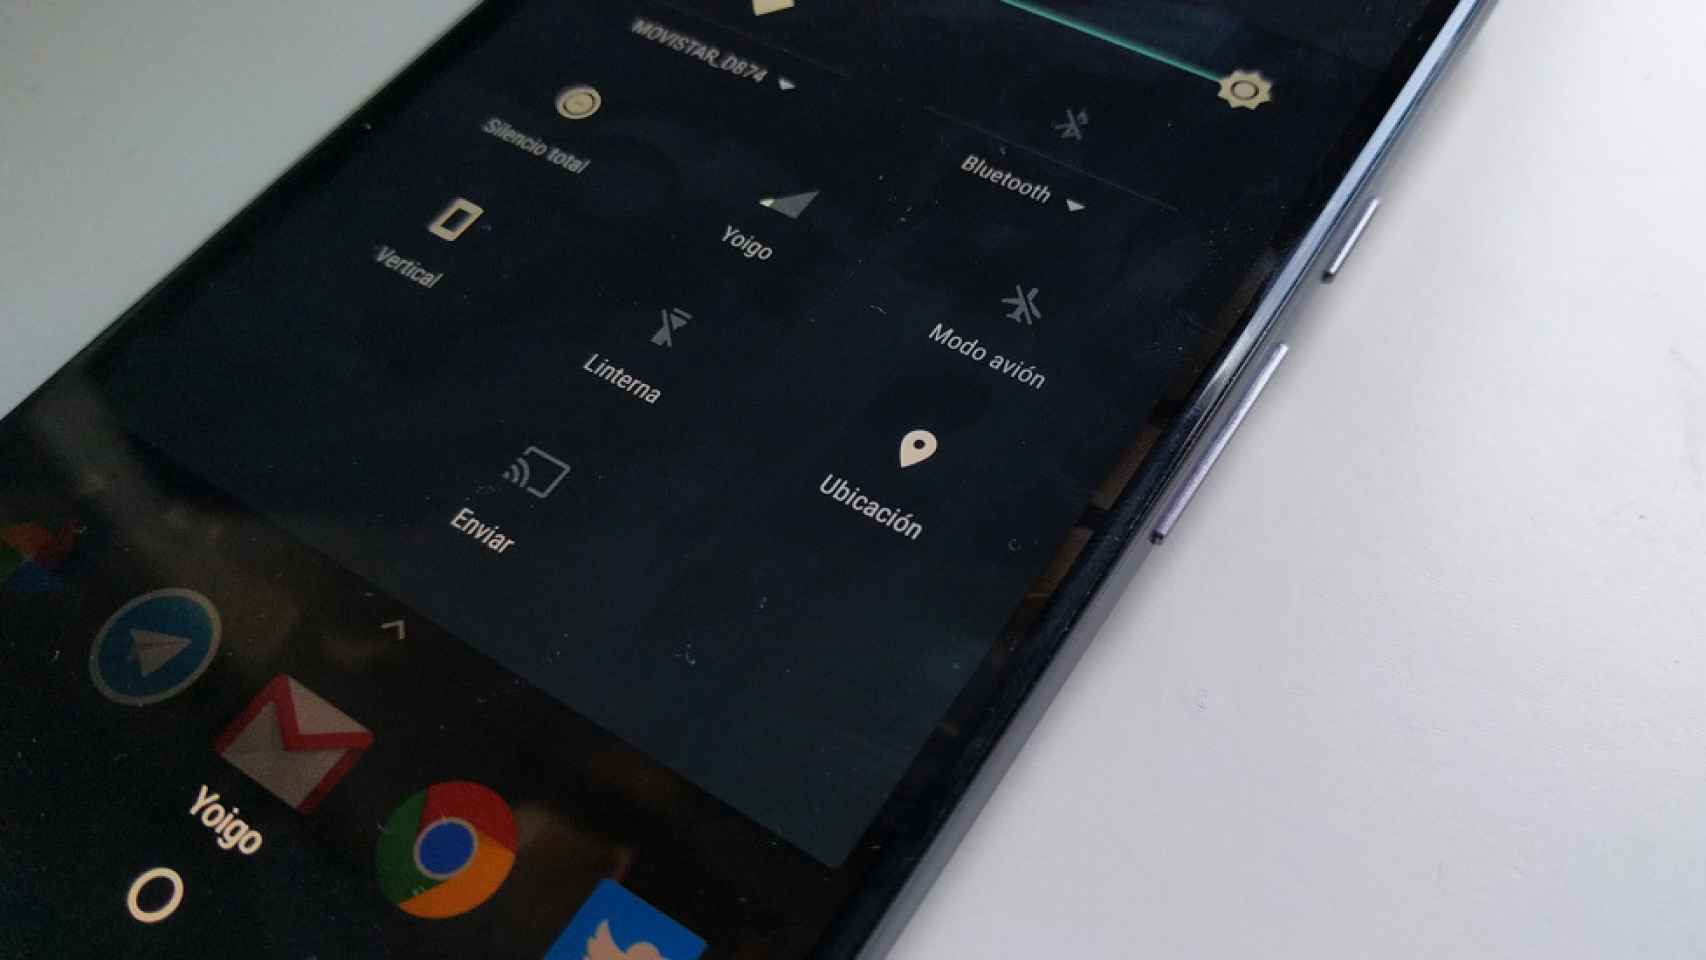 La nueva purga en la Play Store: Google revisará todas las aplicaciones que accedan a tu ubicación